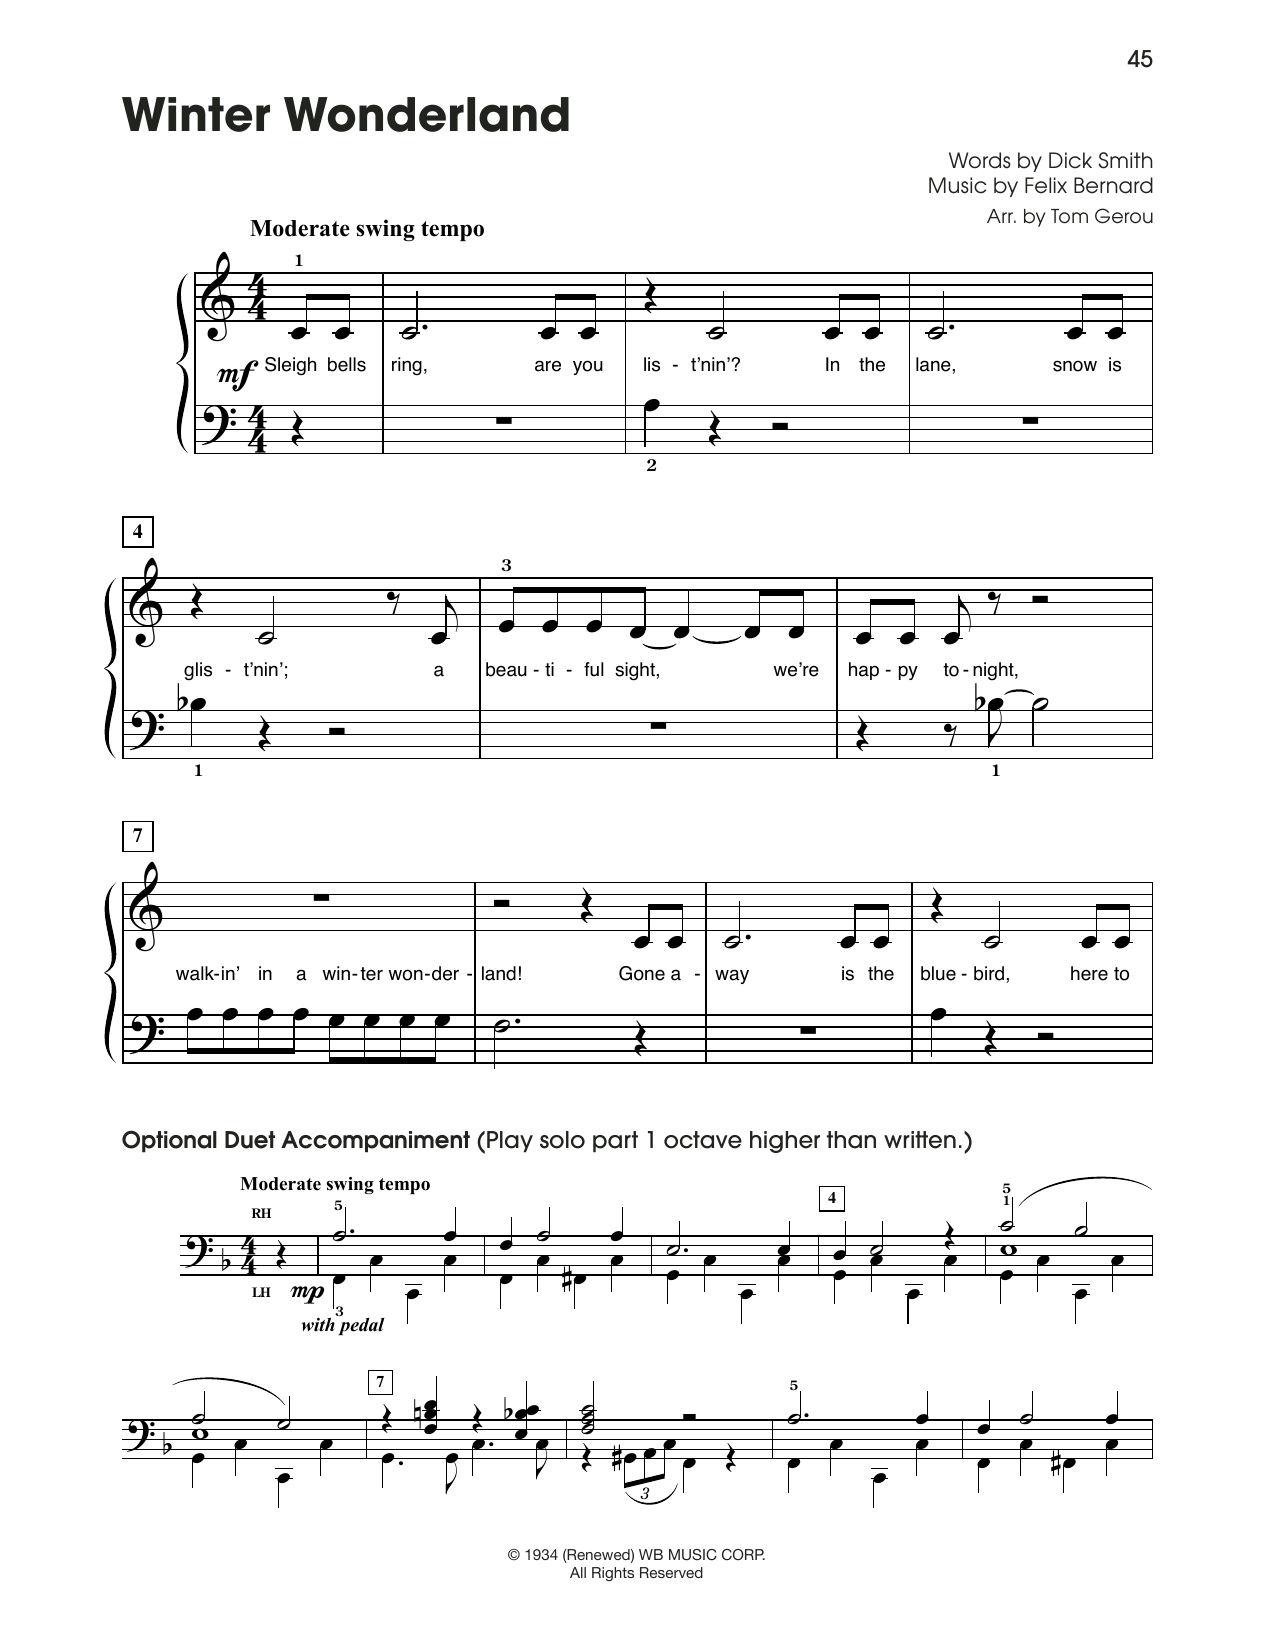 Felix Bernard Winter Wonderland (arr. Tom Gerou) Sheet Music Notes & Chords for 5-Finger Piano - Download or Print PDF